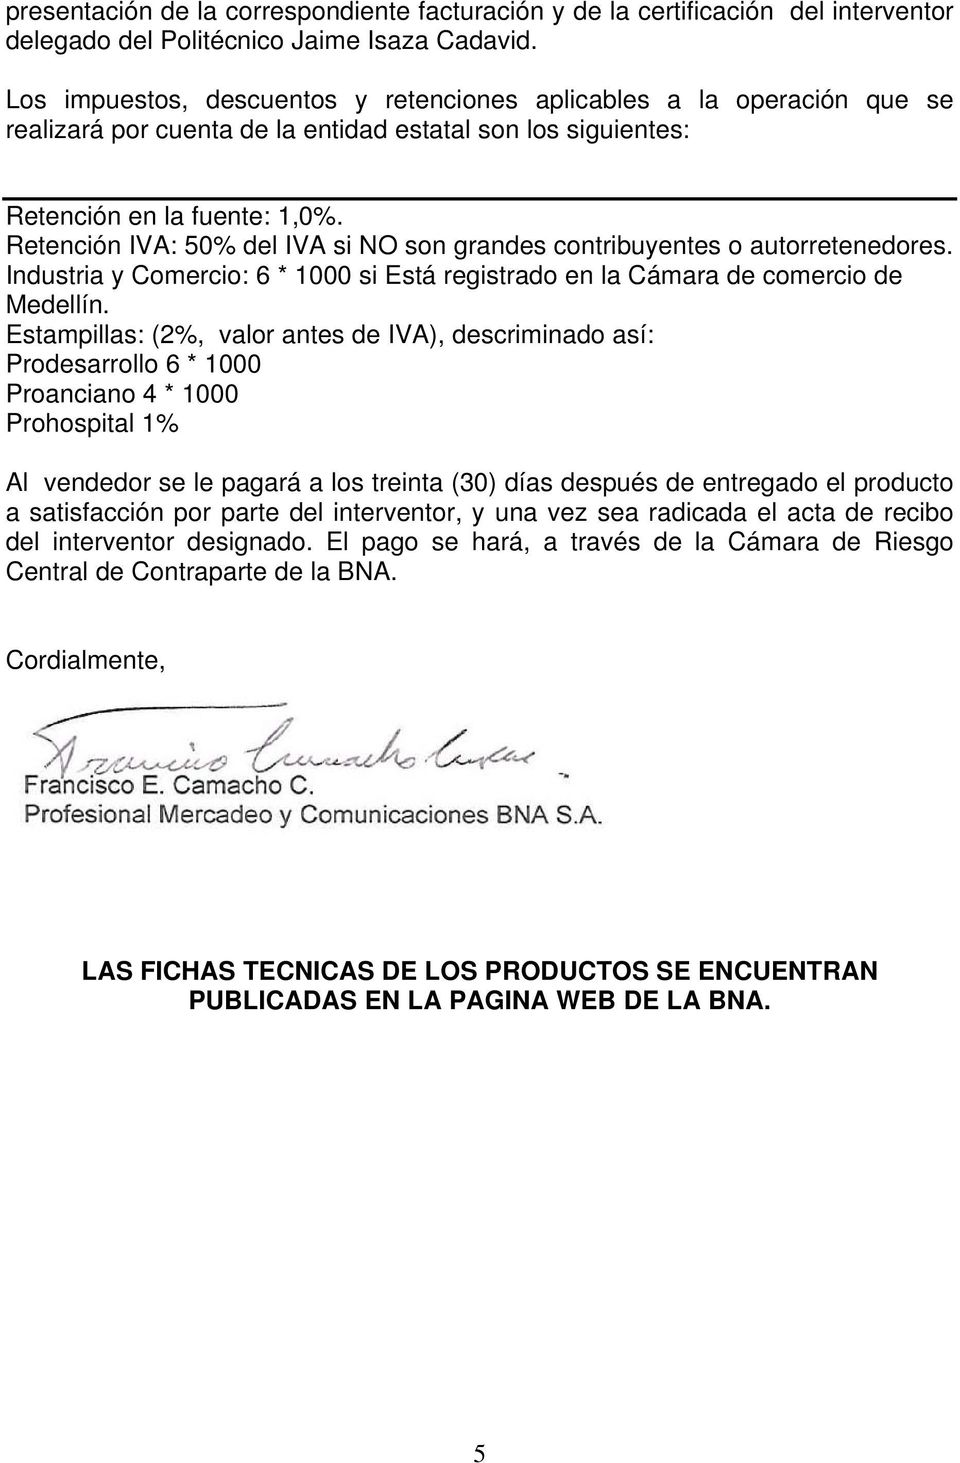 Retención IVA: 50% del IVA si NO son grandes contribuyentes o autorretenedores. Industria y Comercio: 6 * 1000 si Está registrado en la Cámara de comercio de Medellín.